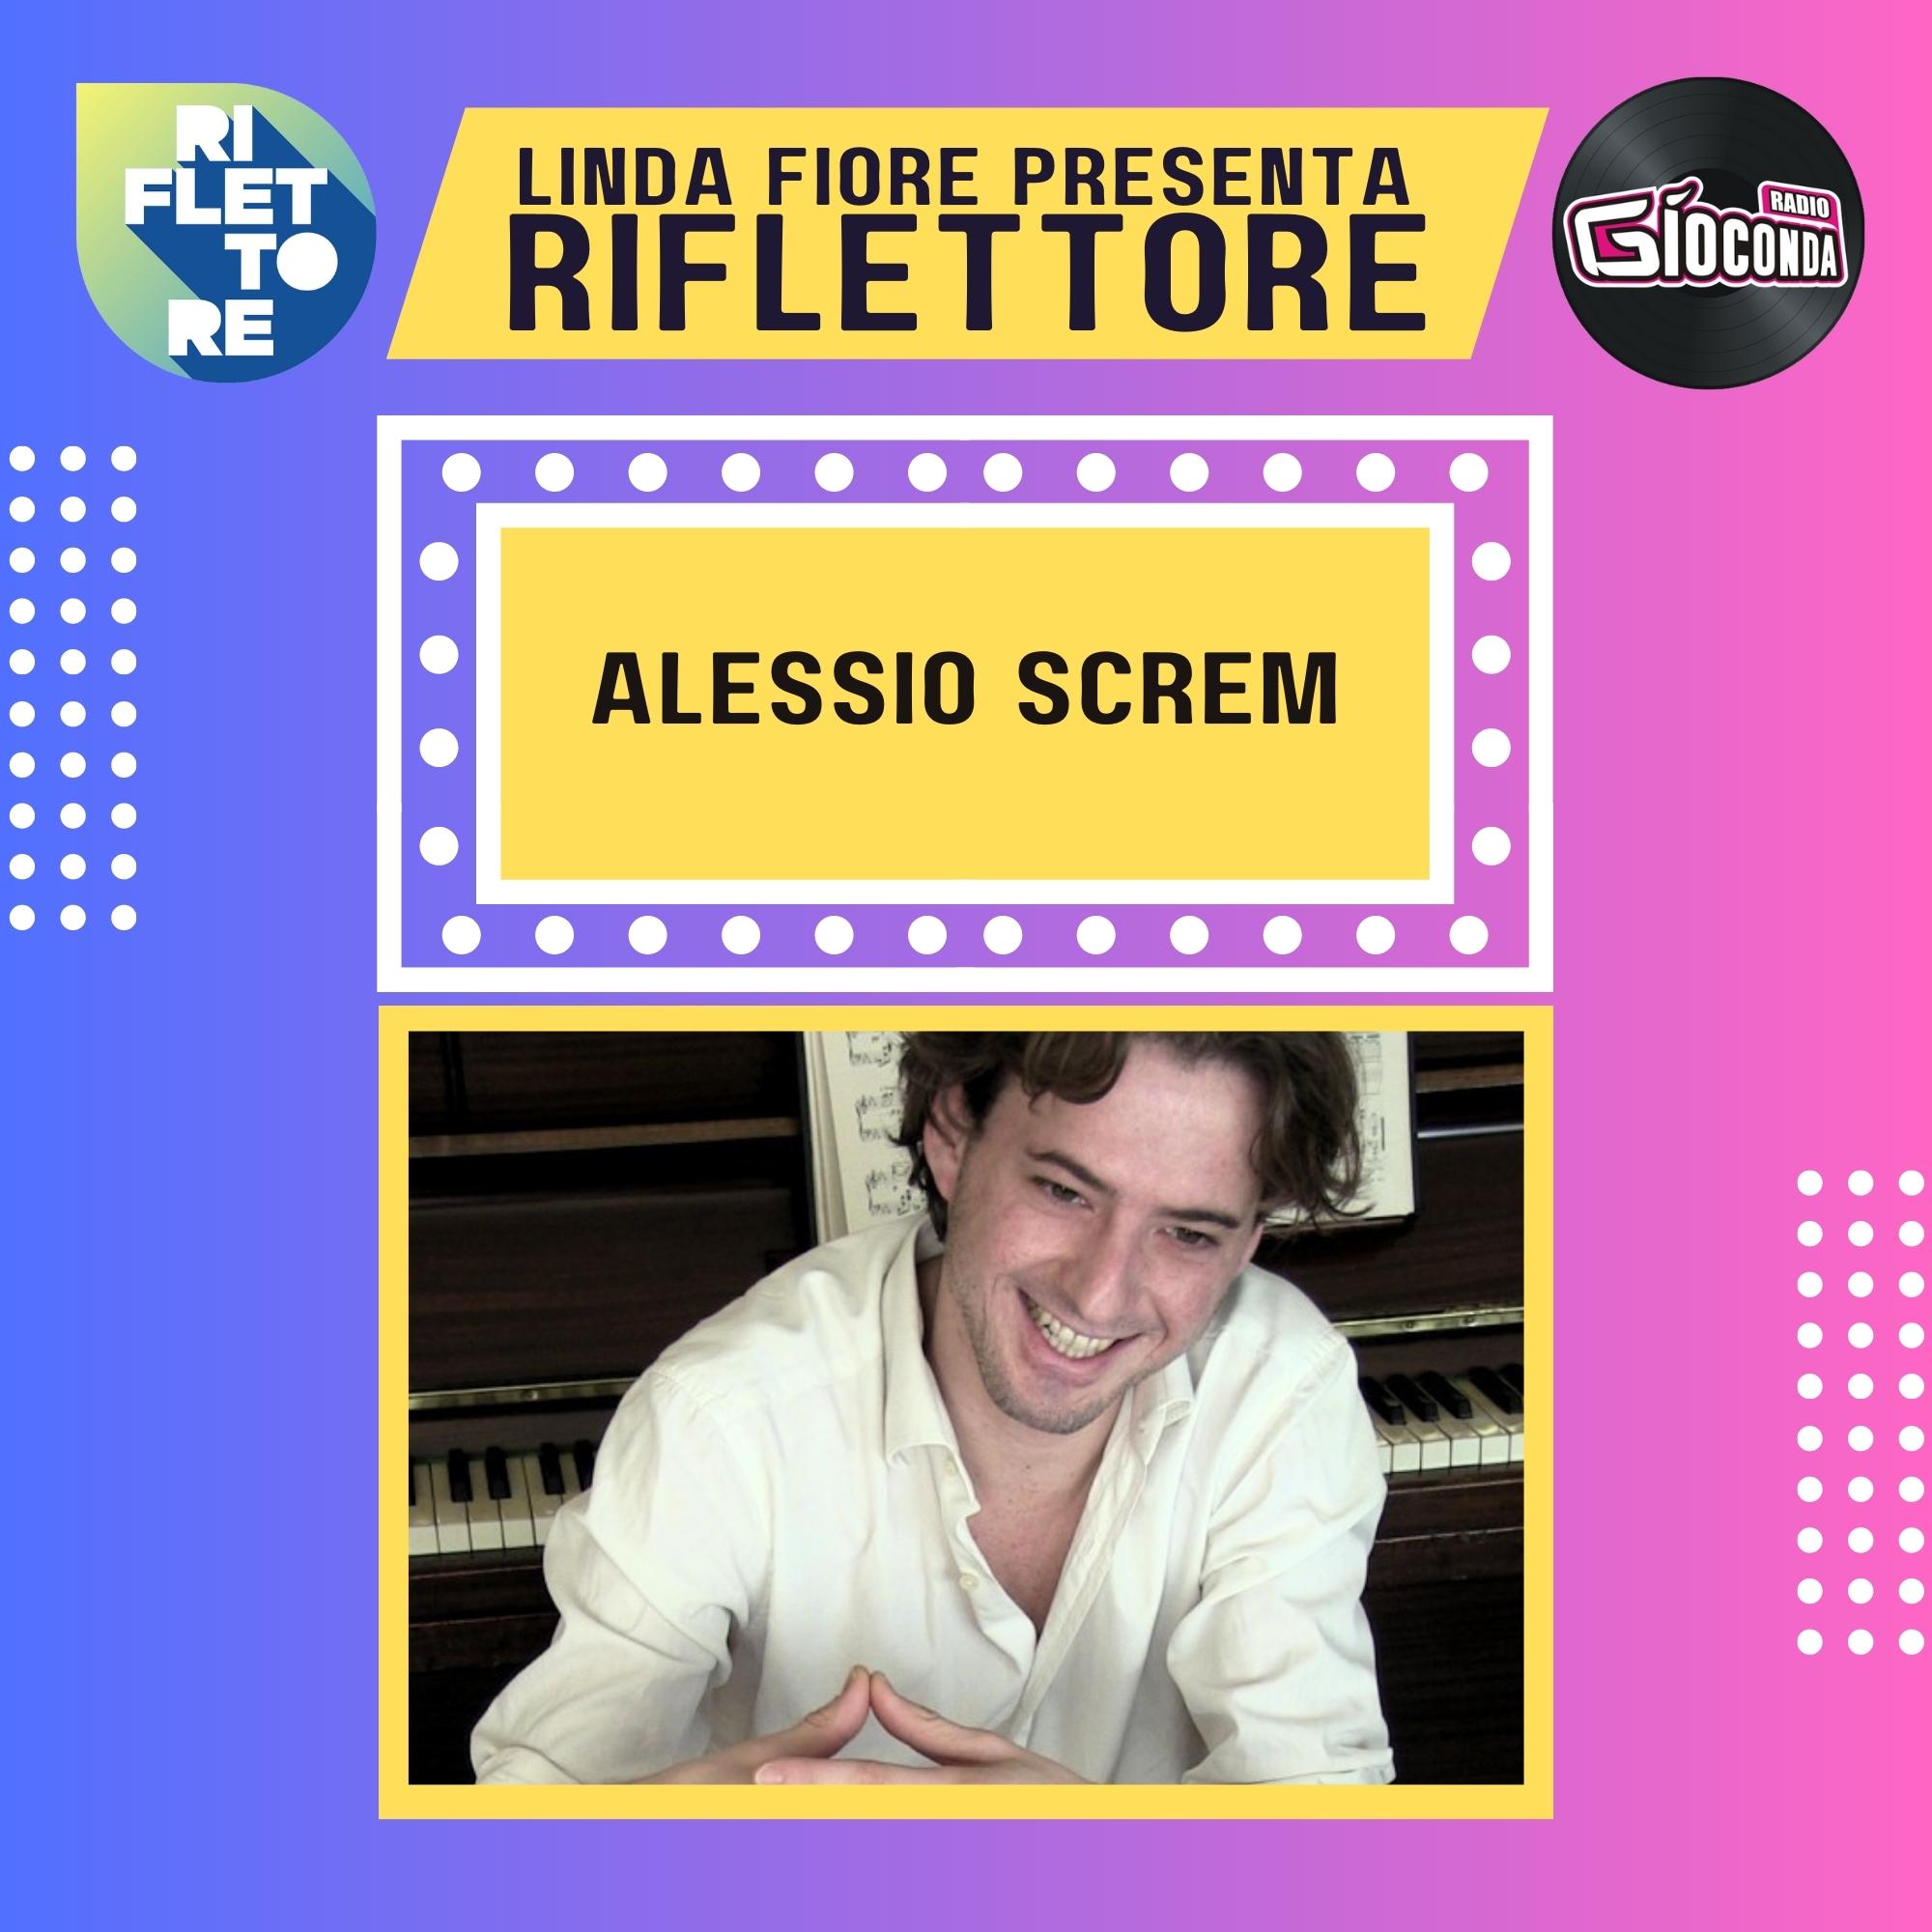 Riflettore con Alessio Screm, dottore internazionale di ricerca in musicologia